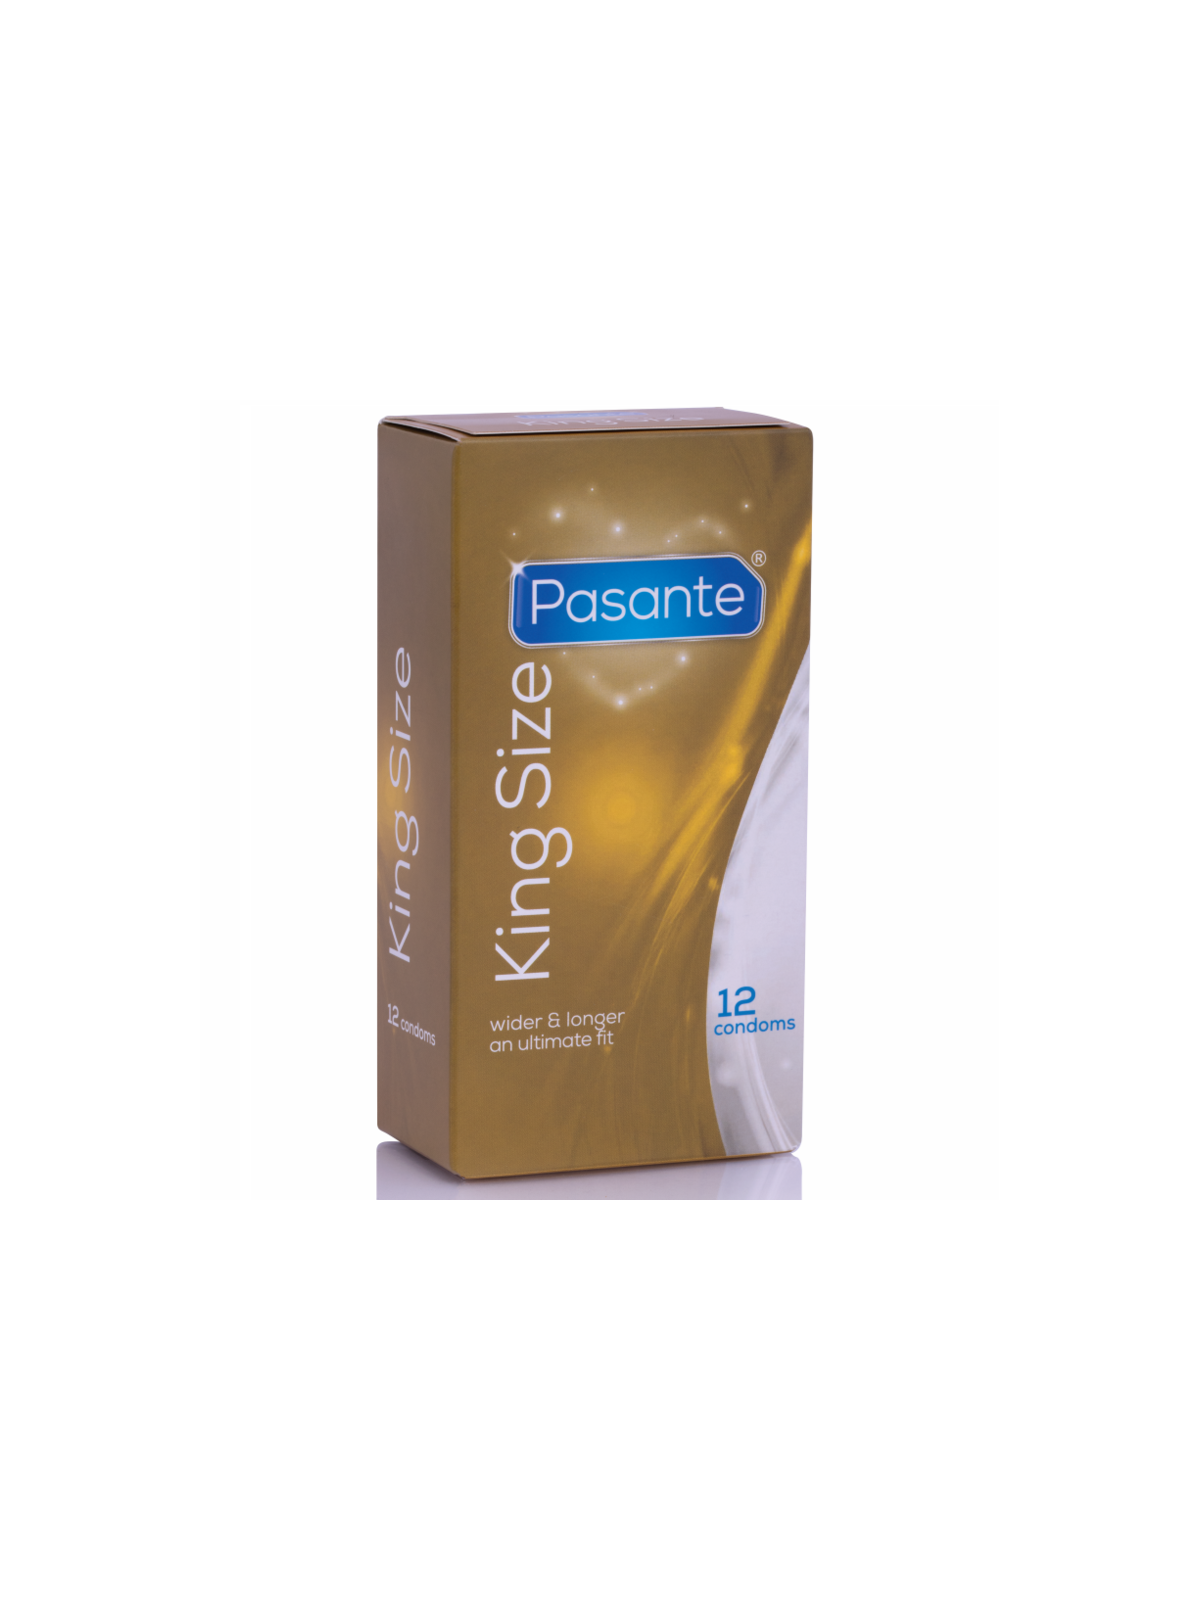 Pasante Preservativos King Más Largos & Anchos - Comprar Condones XL Pasante - Preservativos XL (1)